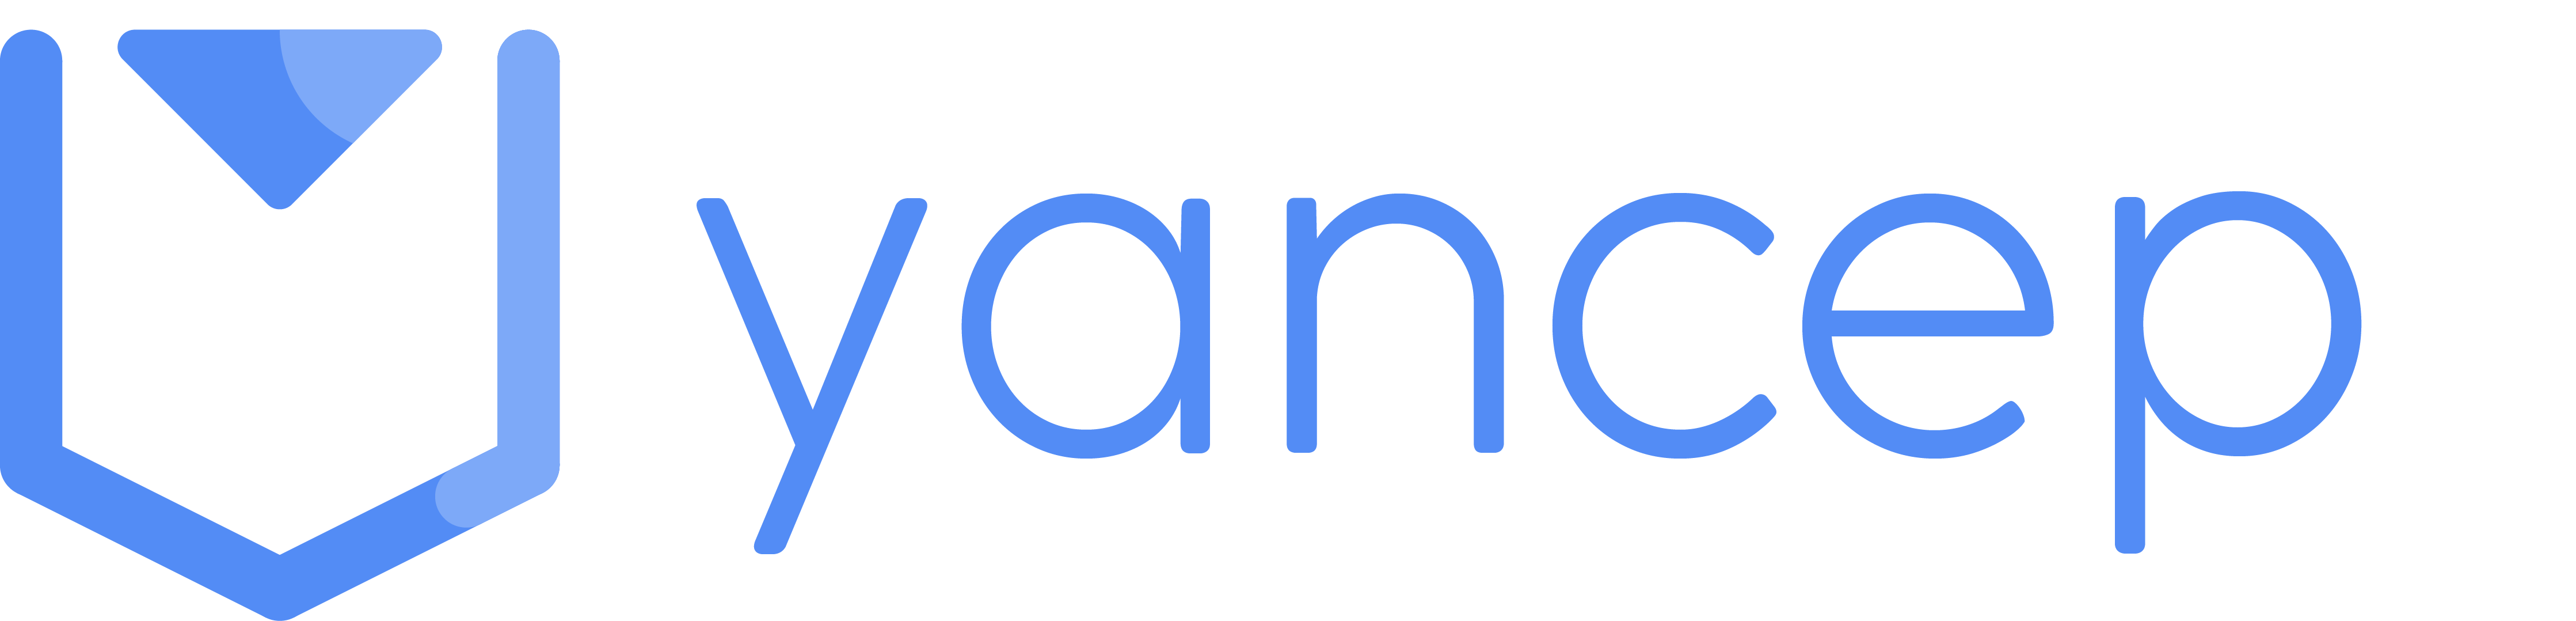 hop-logo